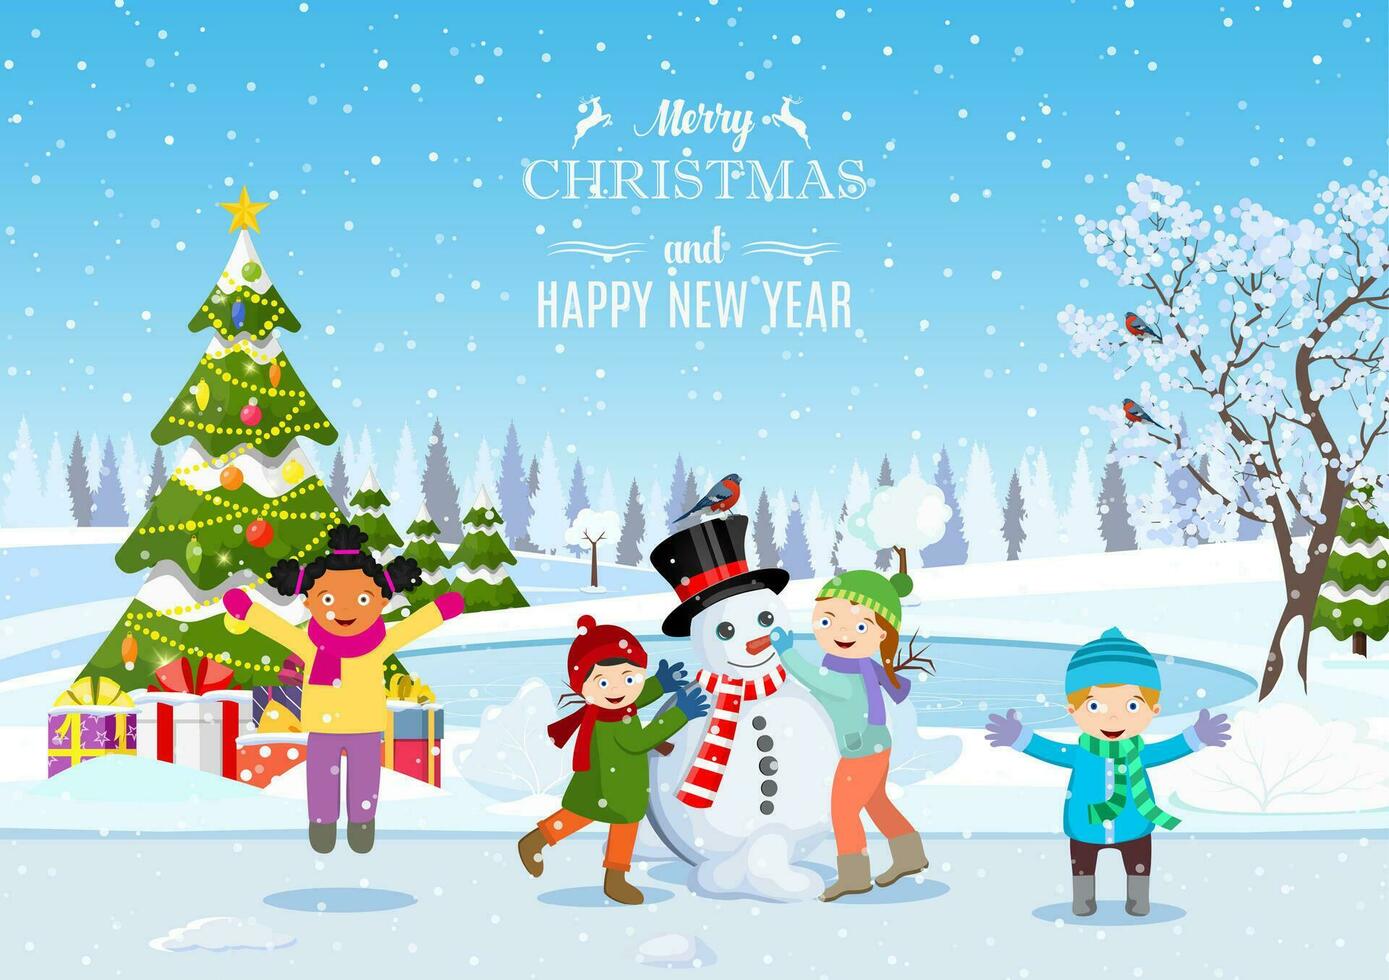 contento nuevo año y alegre Navidad saludo tarjeta. Navidad paisaje. Navidad árbol. niños edificio muñeco de nieve. invierno vacaciones. vector ilustración en plano estilo